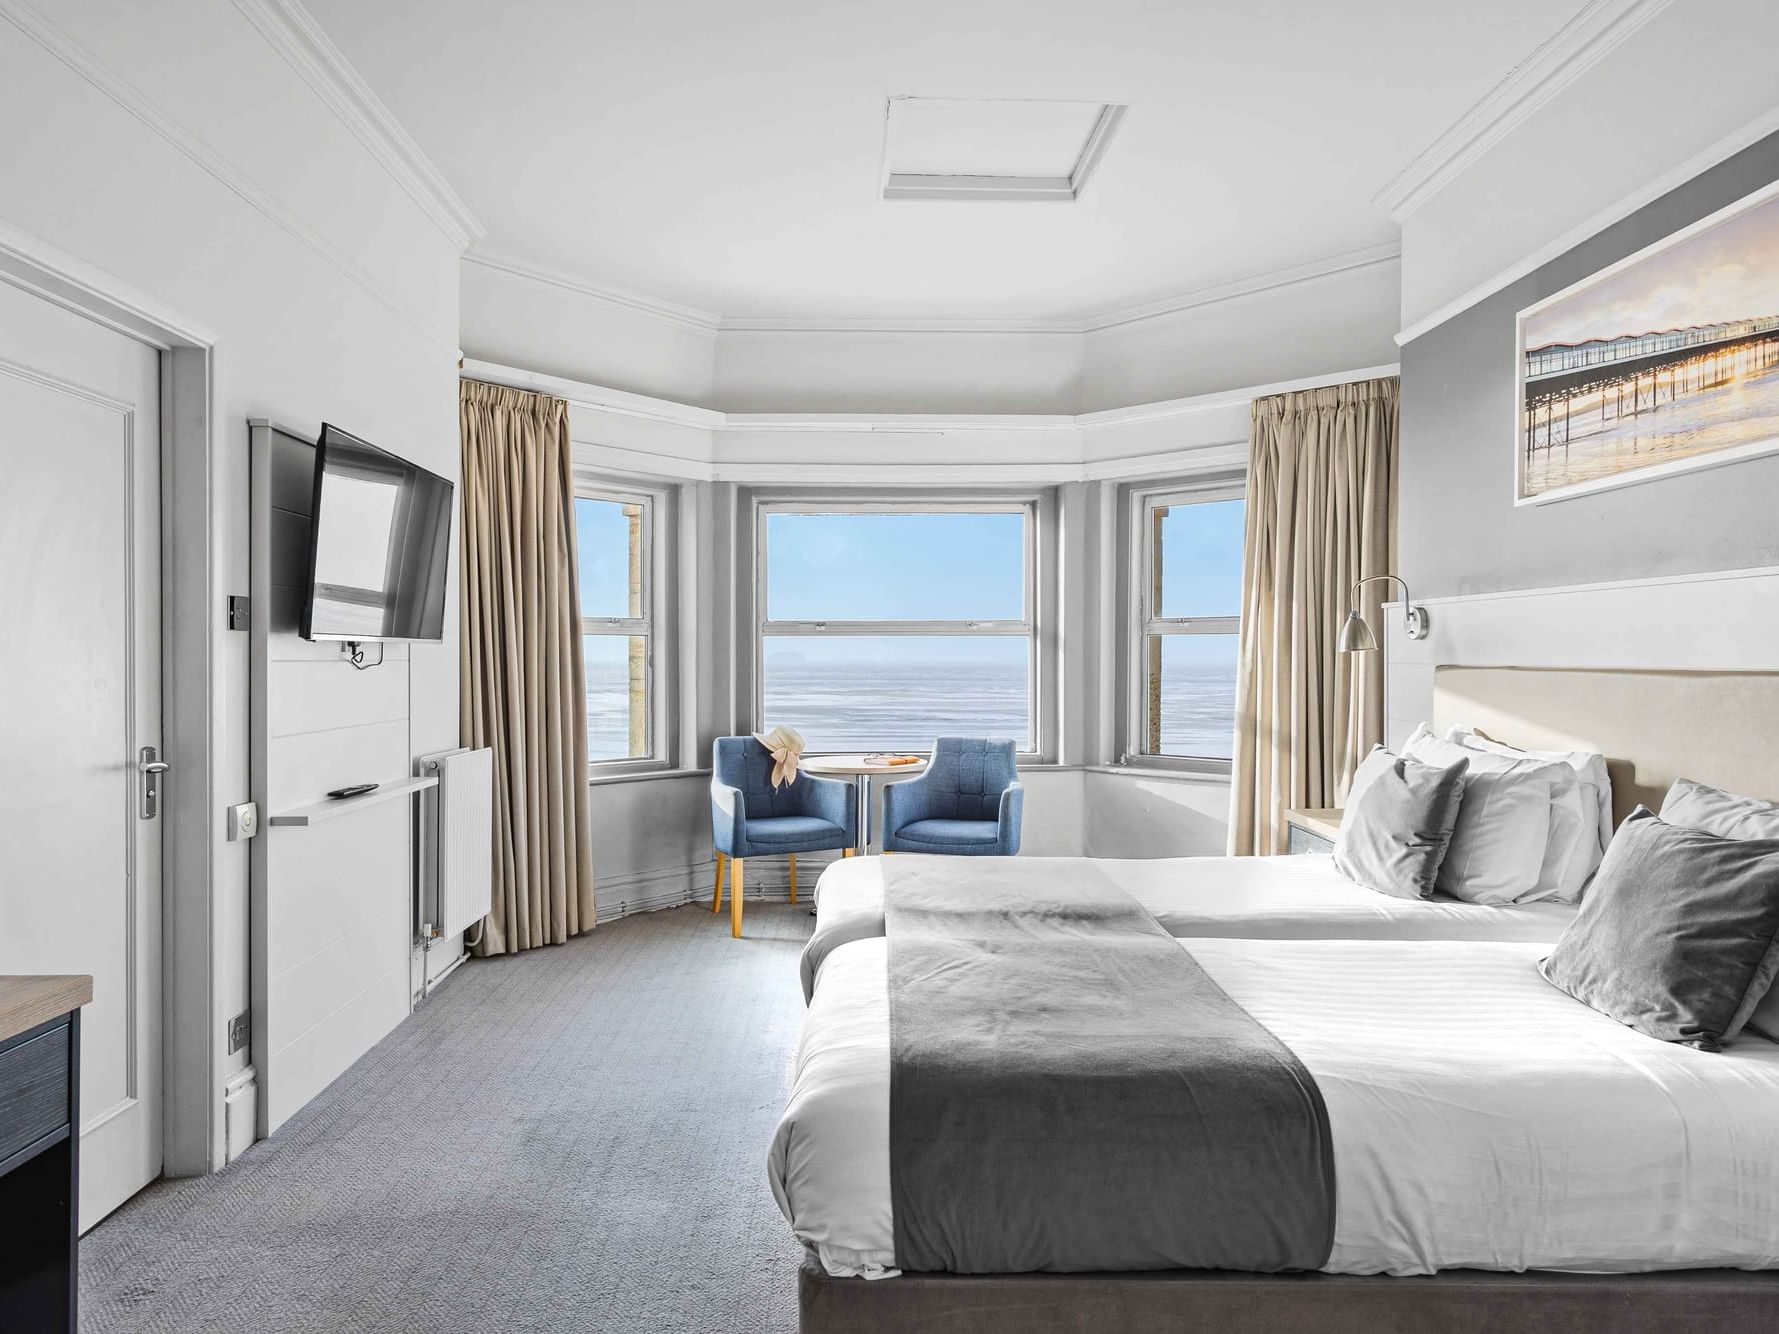 Superior Sea View Twin Room at The Grand Atlantic Hotel in Weston-super-Mare